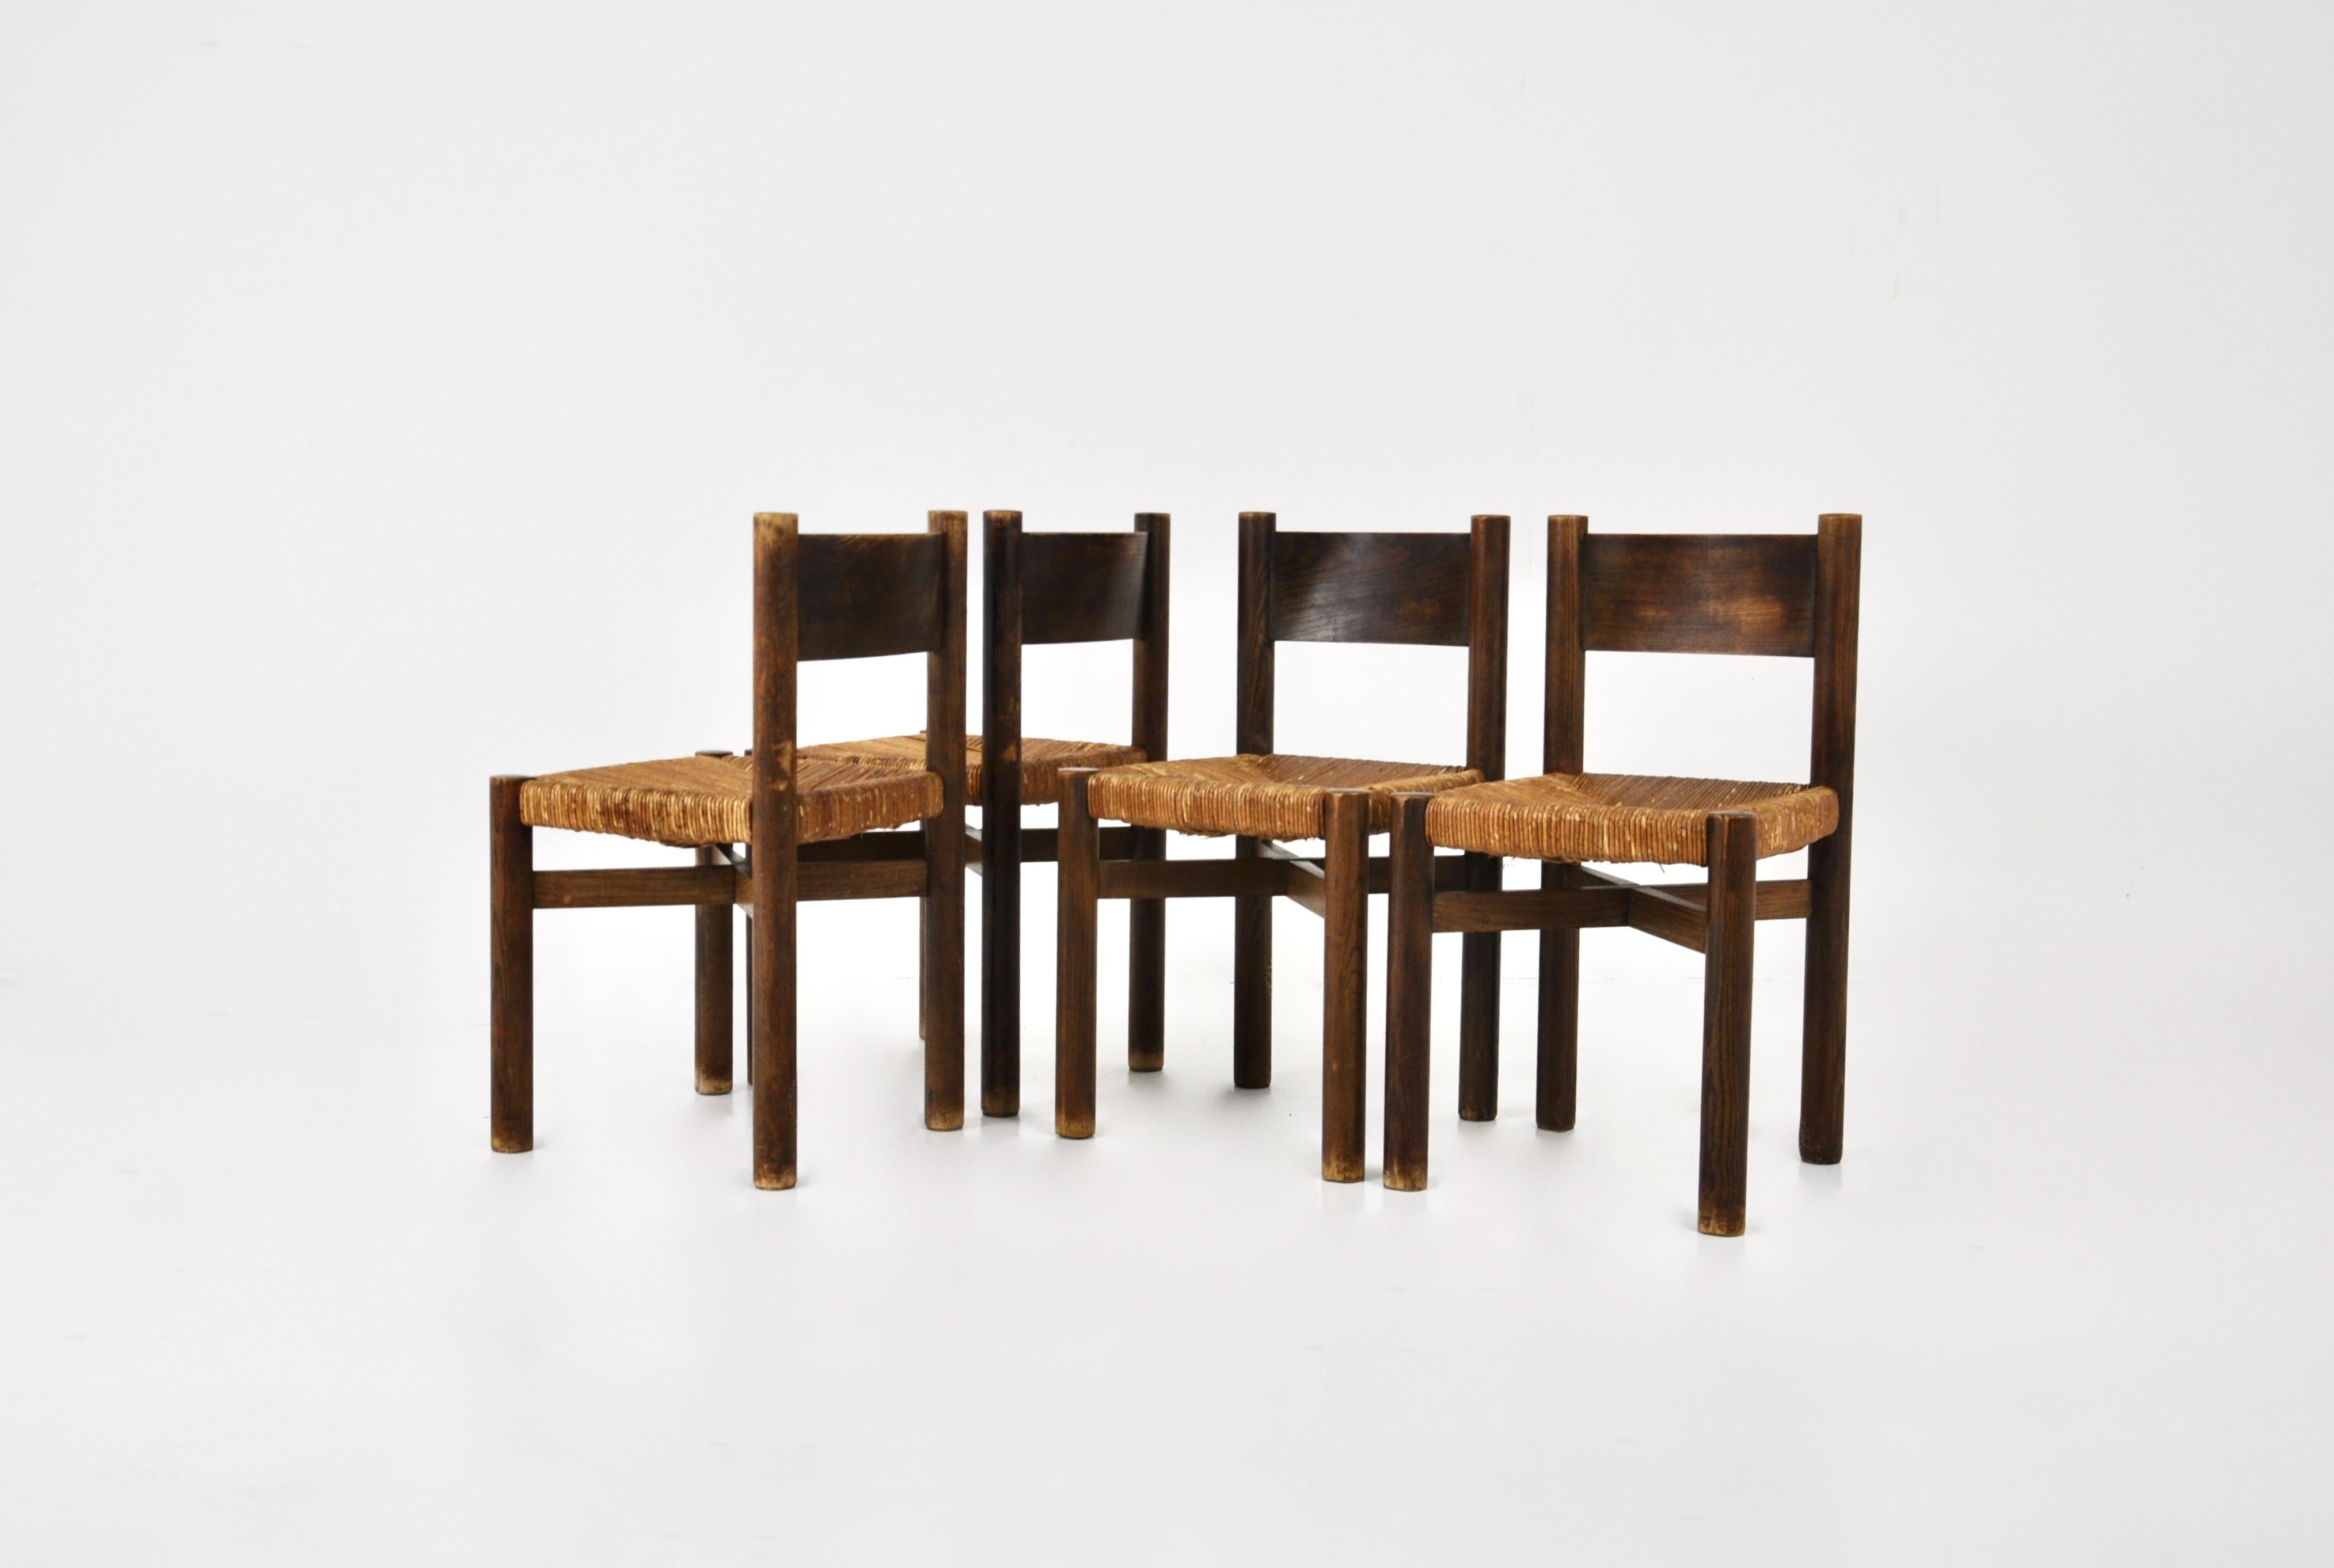 Satz von 4 Holzstühlen mit Strohsitz, entworfen von Charlotte Perriand in den 1950er Jahren, Modell: Meribel. Sitzhöhe: 45 cm. Abnutzung durch Zeit und Alter des Stuhls.